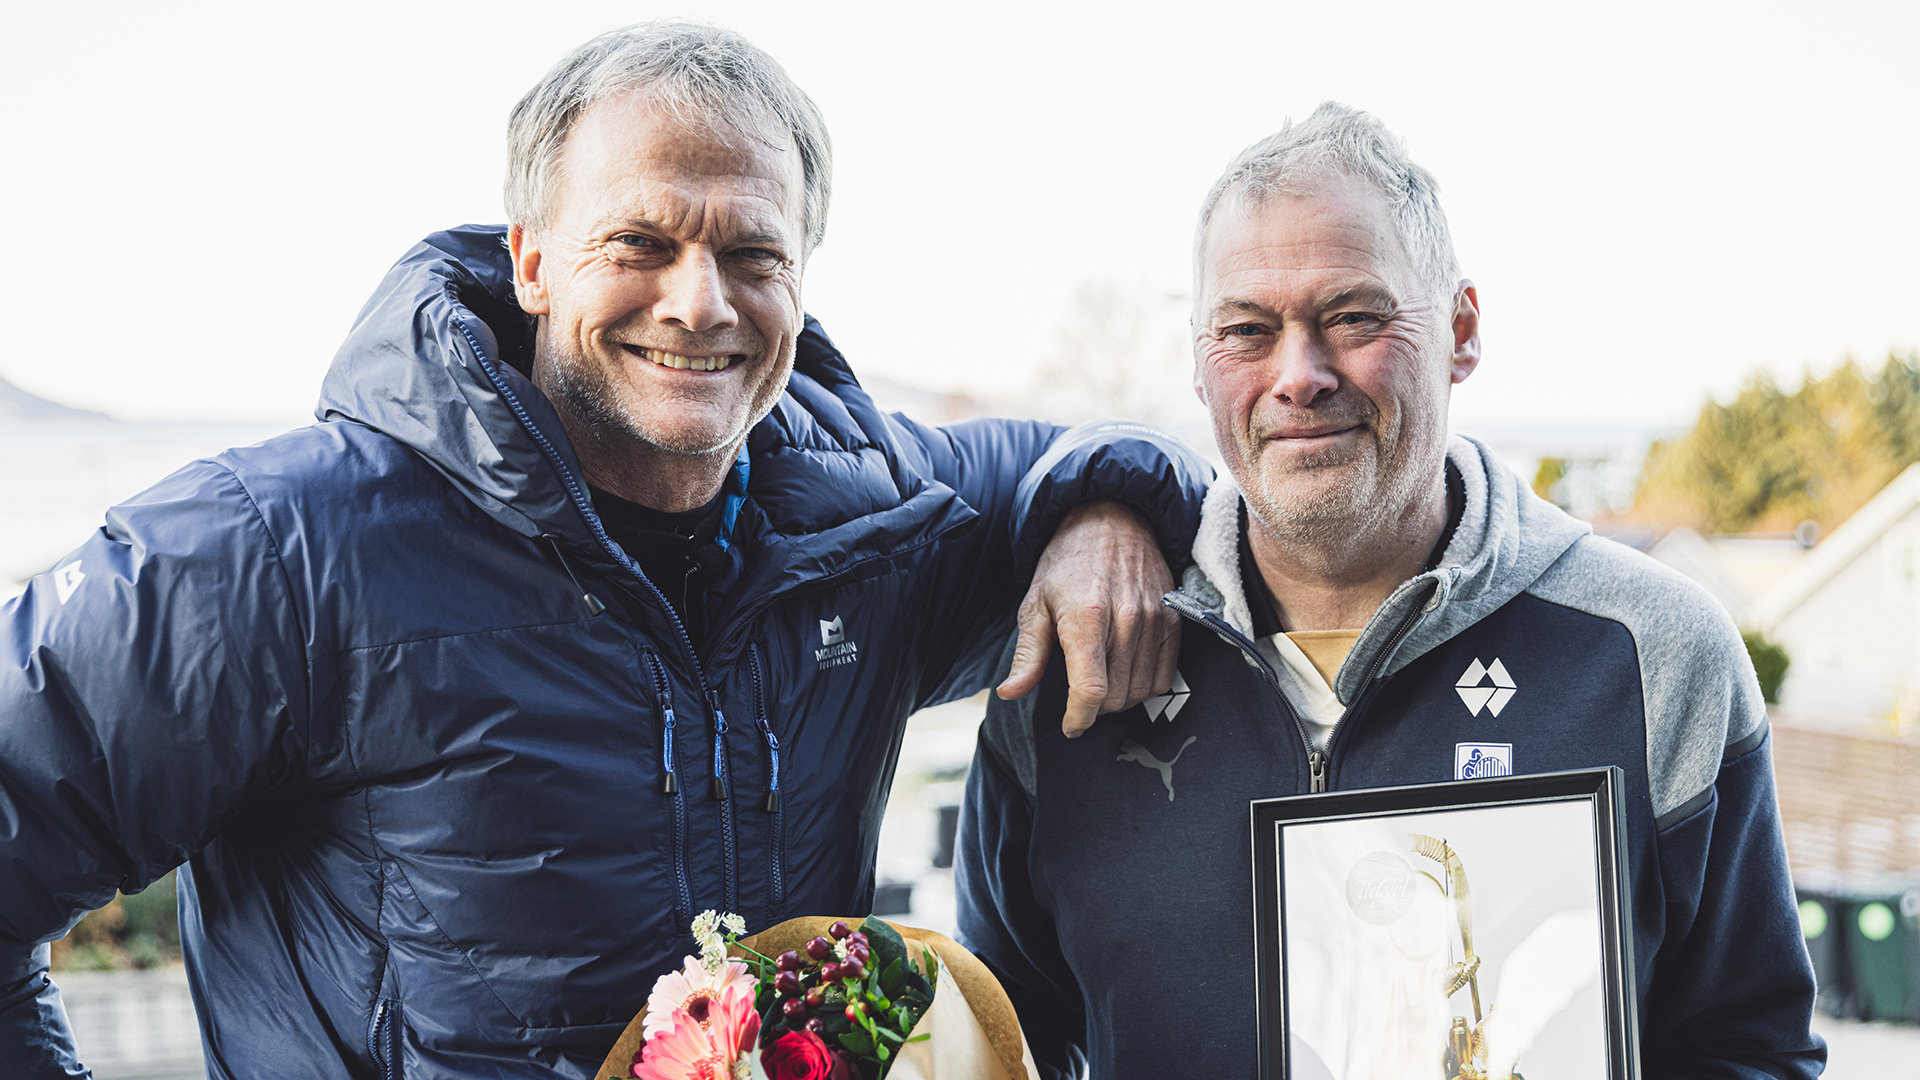 Arne Bakke Flatin er Møre og Romsdals kretsvinner til prisen Årets ildsjel